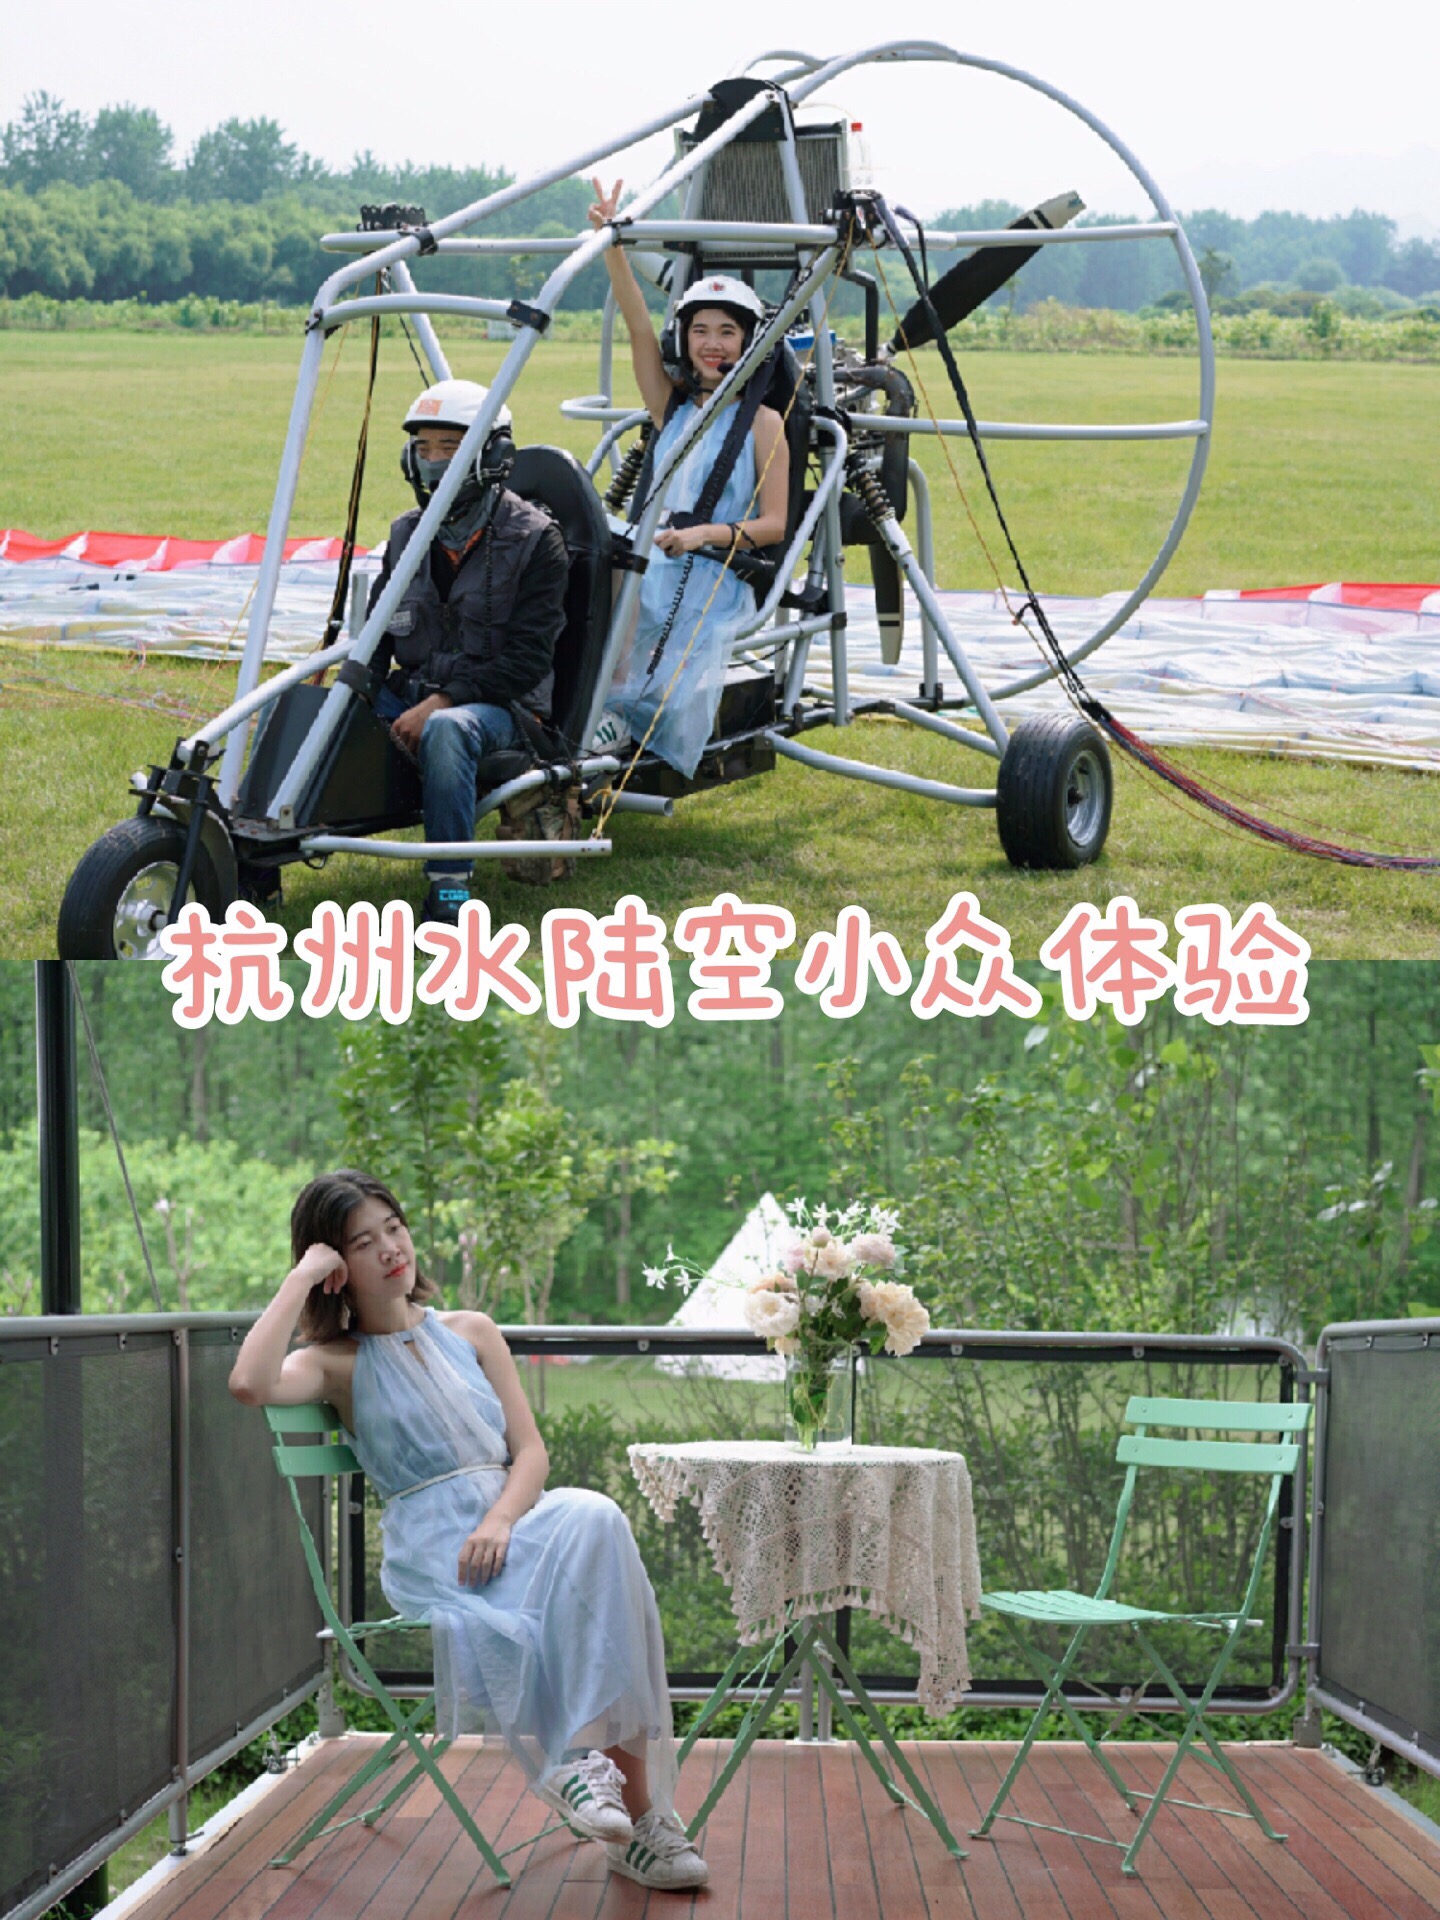 🏝️杭州水陆空小众体验——亚联航空基地 🌟杭州桐洲岛60000㎡飞行营地！动力滑翔伞🪂浪漫热气球🎈带